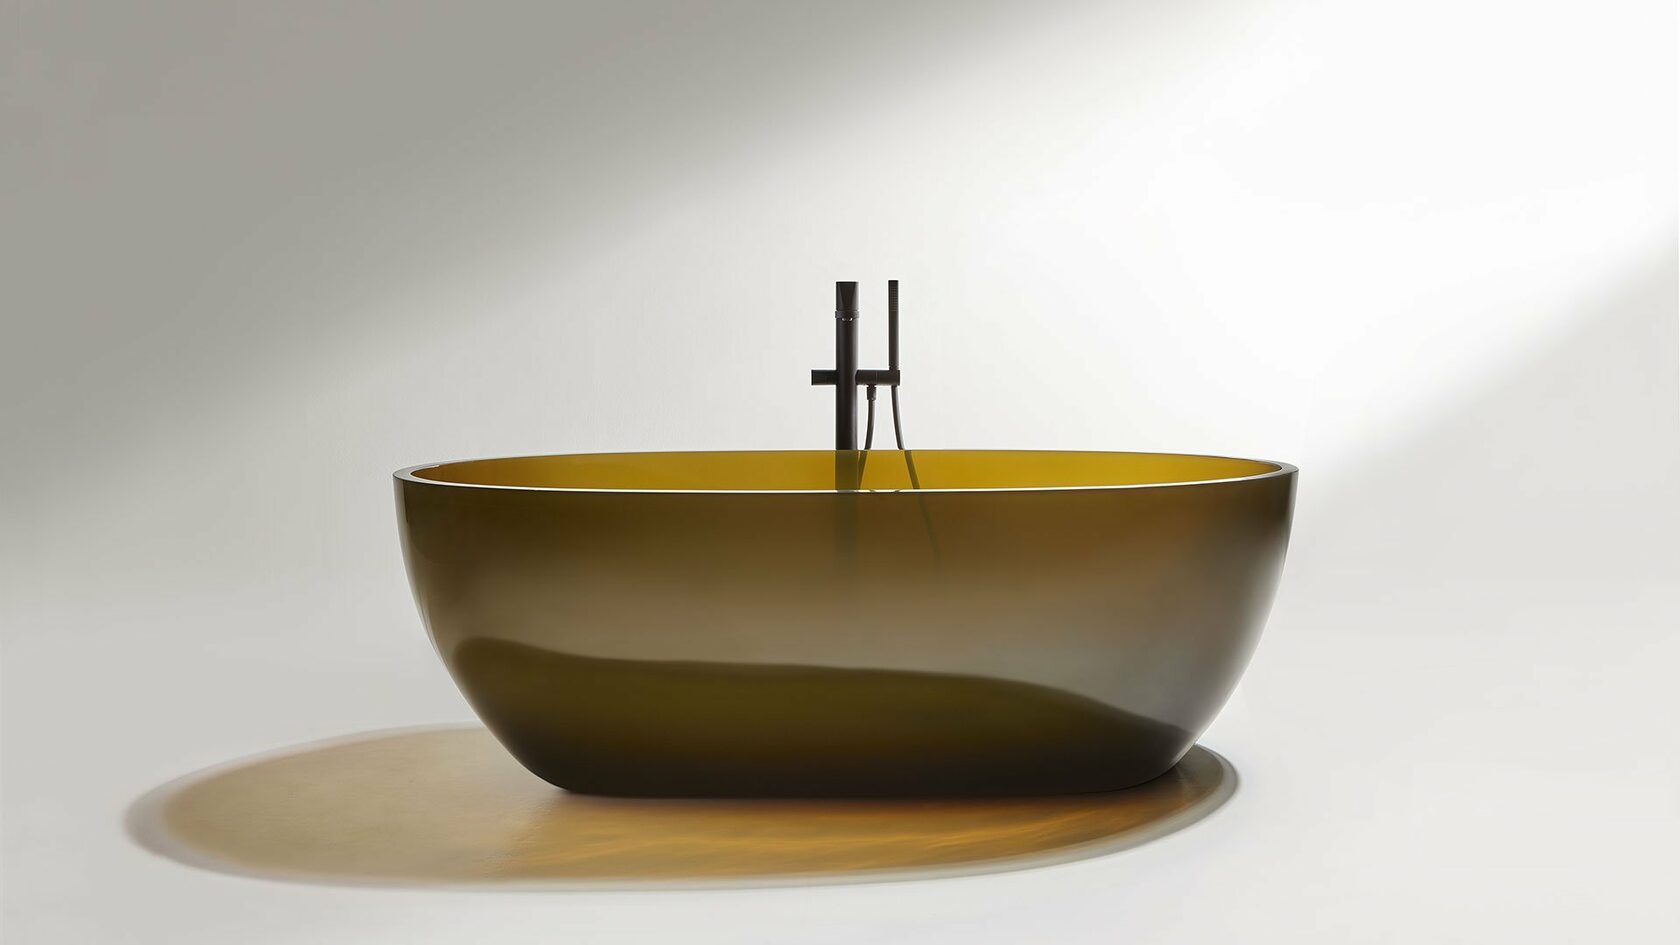 Antonio Lupi Reflex ванна овальная из материала Cristalmood.